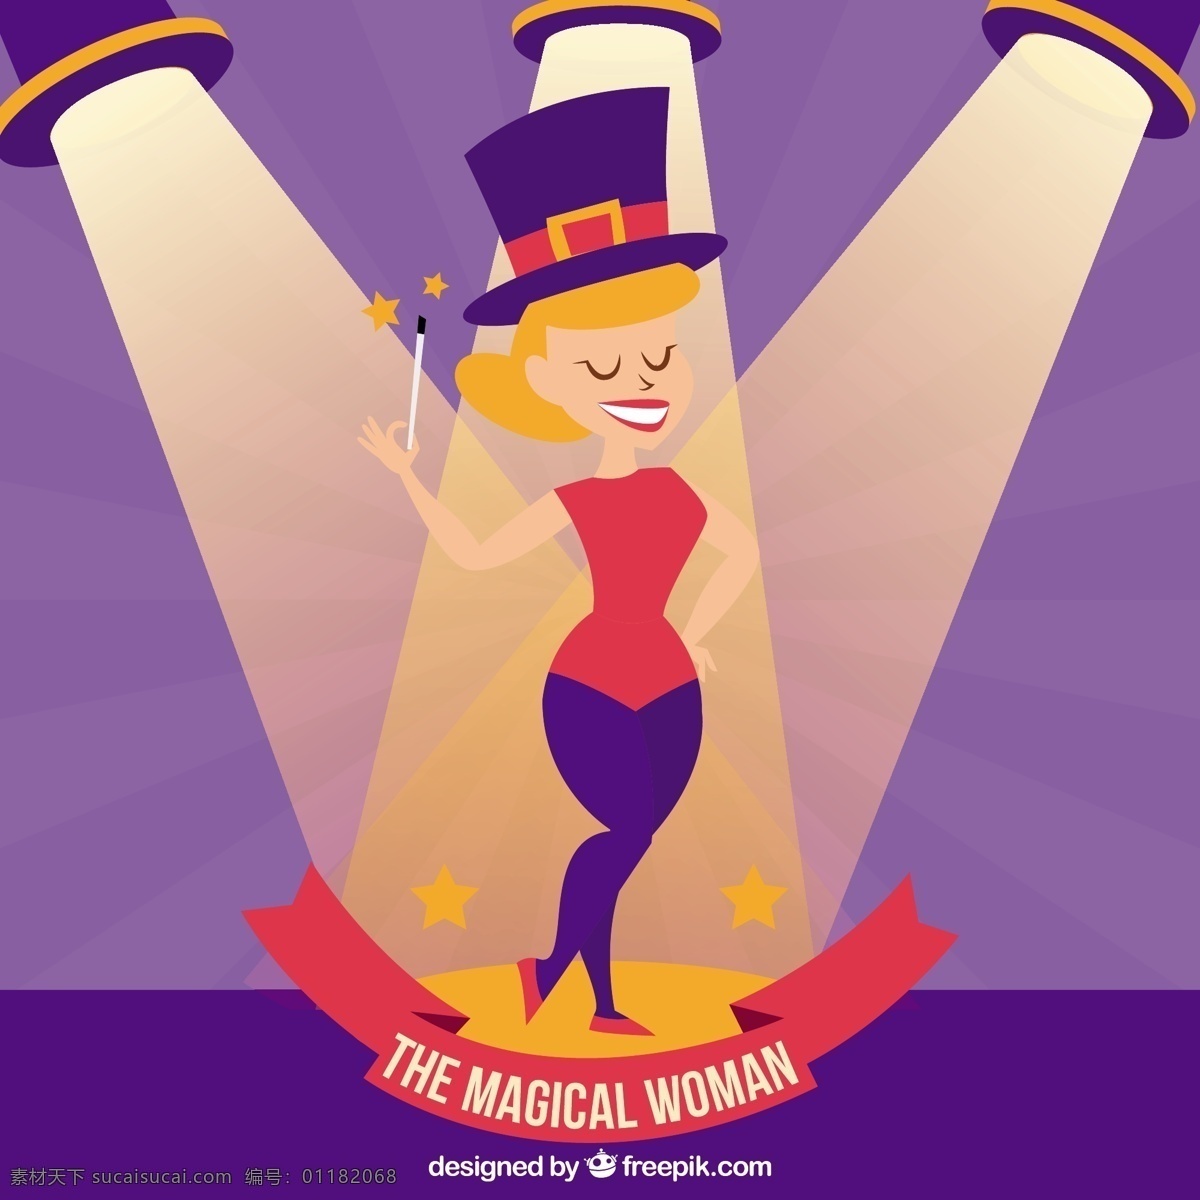 神奇 女人 插图 派对 马戏团 狂欢节 庆典 节日 帽子 活动 公园 聚光灯 娱乐 帐篷 庆祝 博览会 游乐园 魔术师 表演 派对帽 魔术棒 紫色